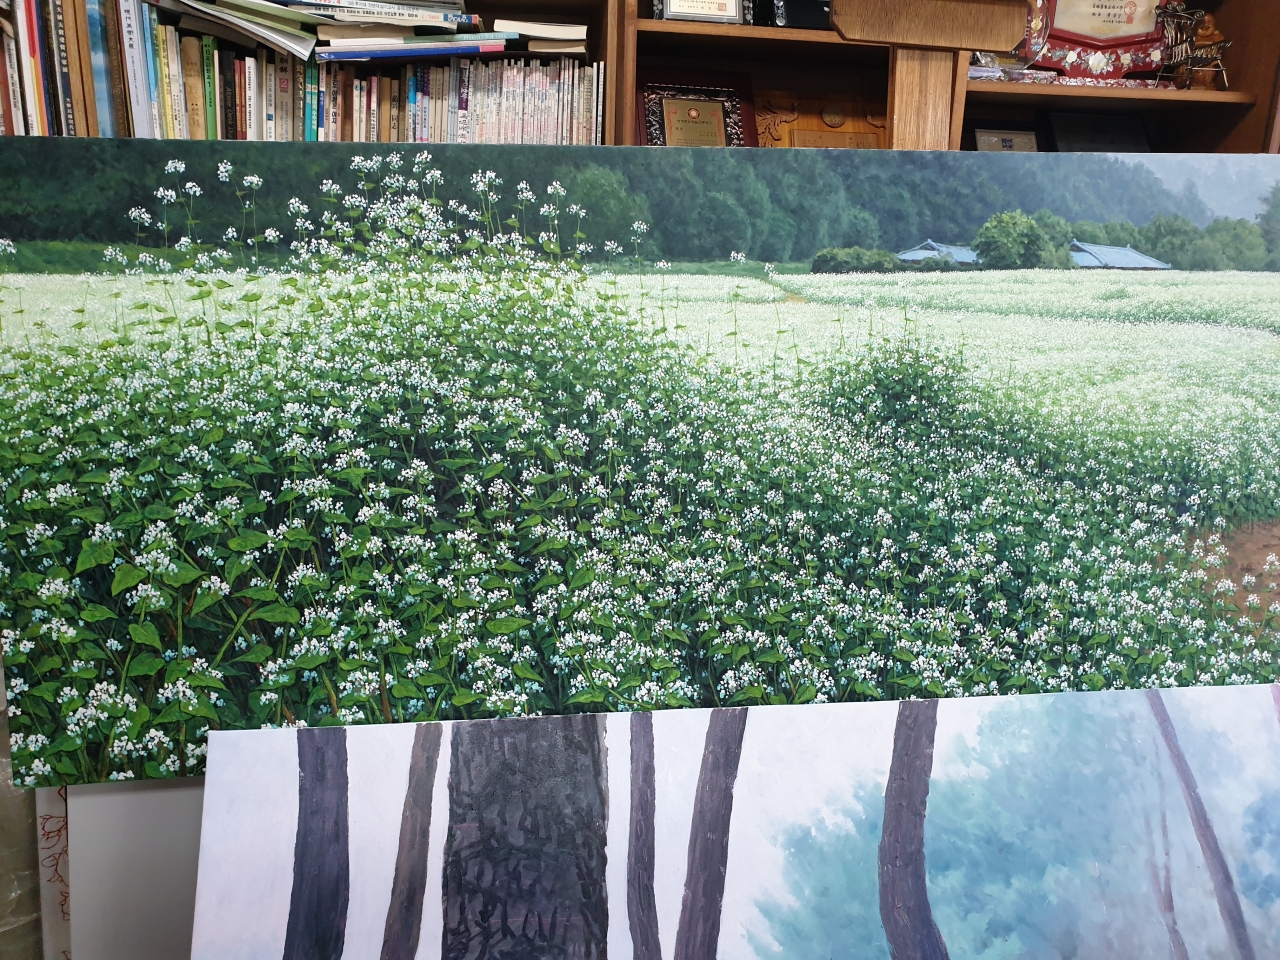 정연서 화백 화실에 있는 작품... 살아있는 듯한 메밀꽃 그림 앞으로 작업중인 소나무 그림이 보인다.